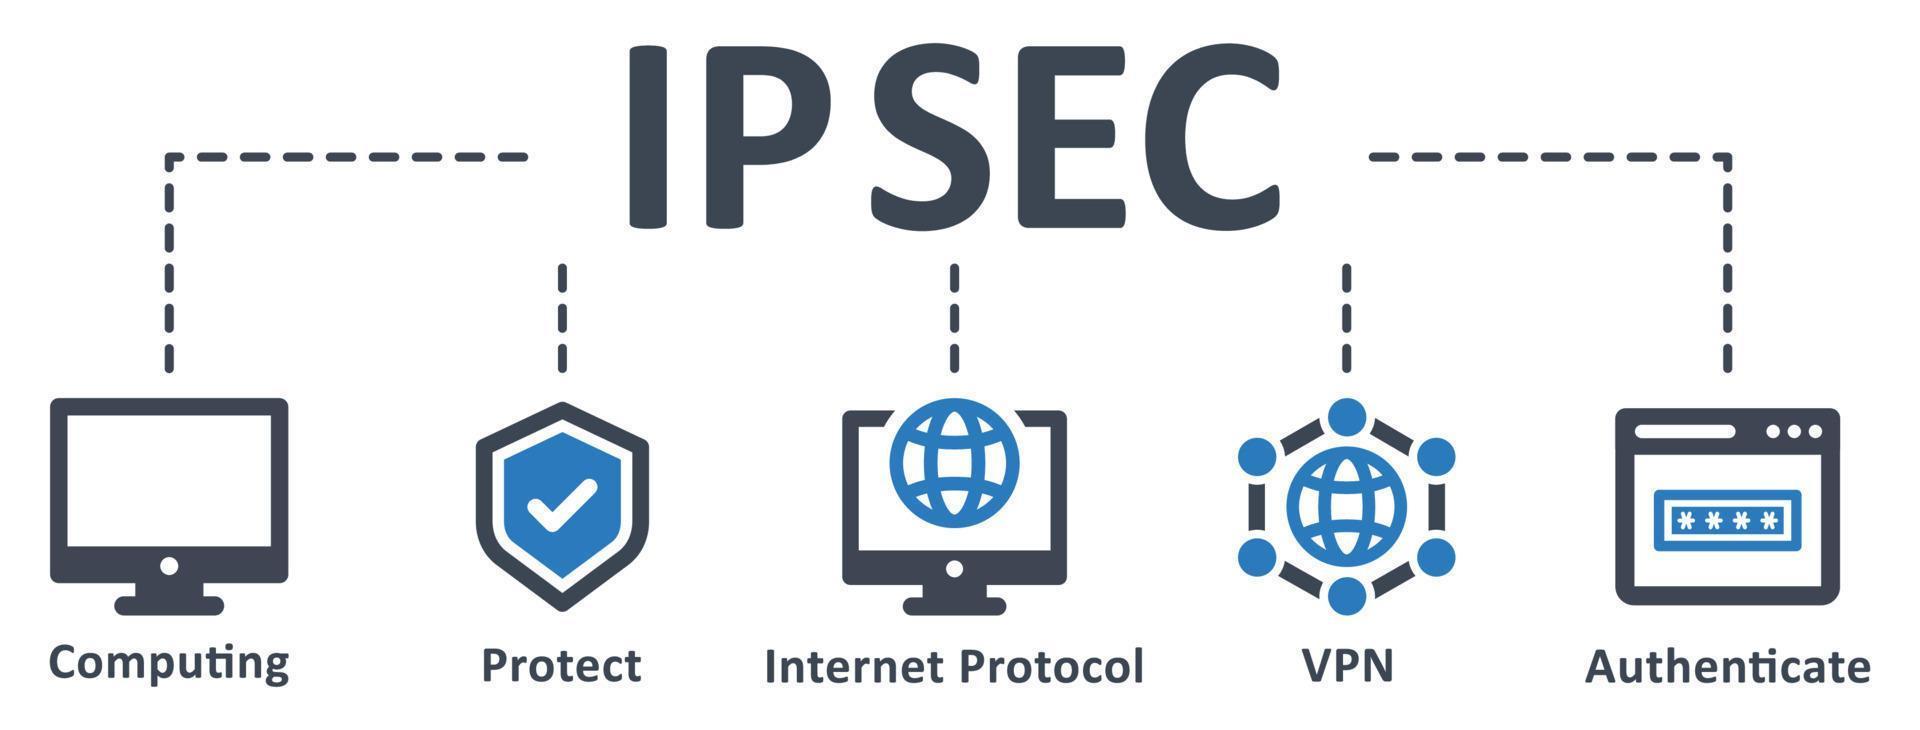 ipsec icona - vettore illustrazione . IPSec, informatica, proteggere, Internet protocollo, VPN, autenticare, Internet, protezione, Rete, sicurezza, infografica, modello, concetto, striscione, icona impostare, icone .